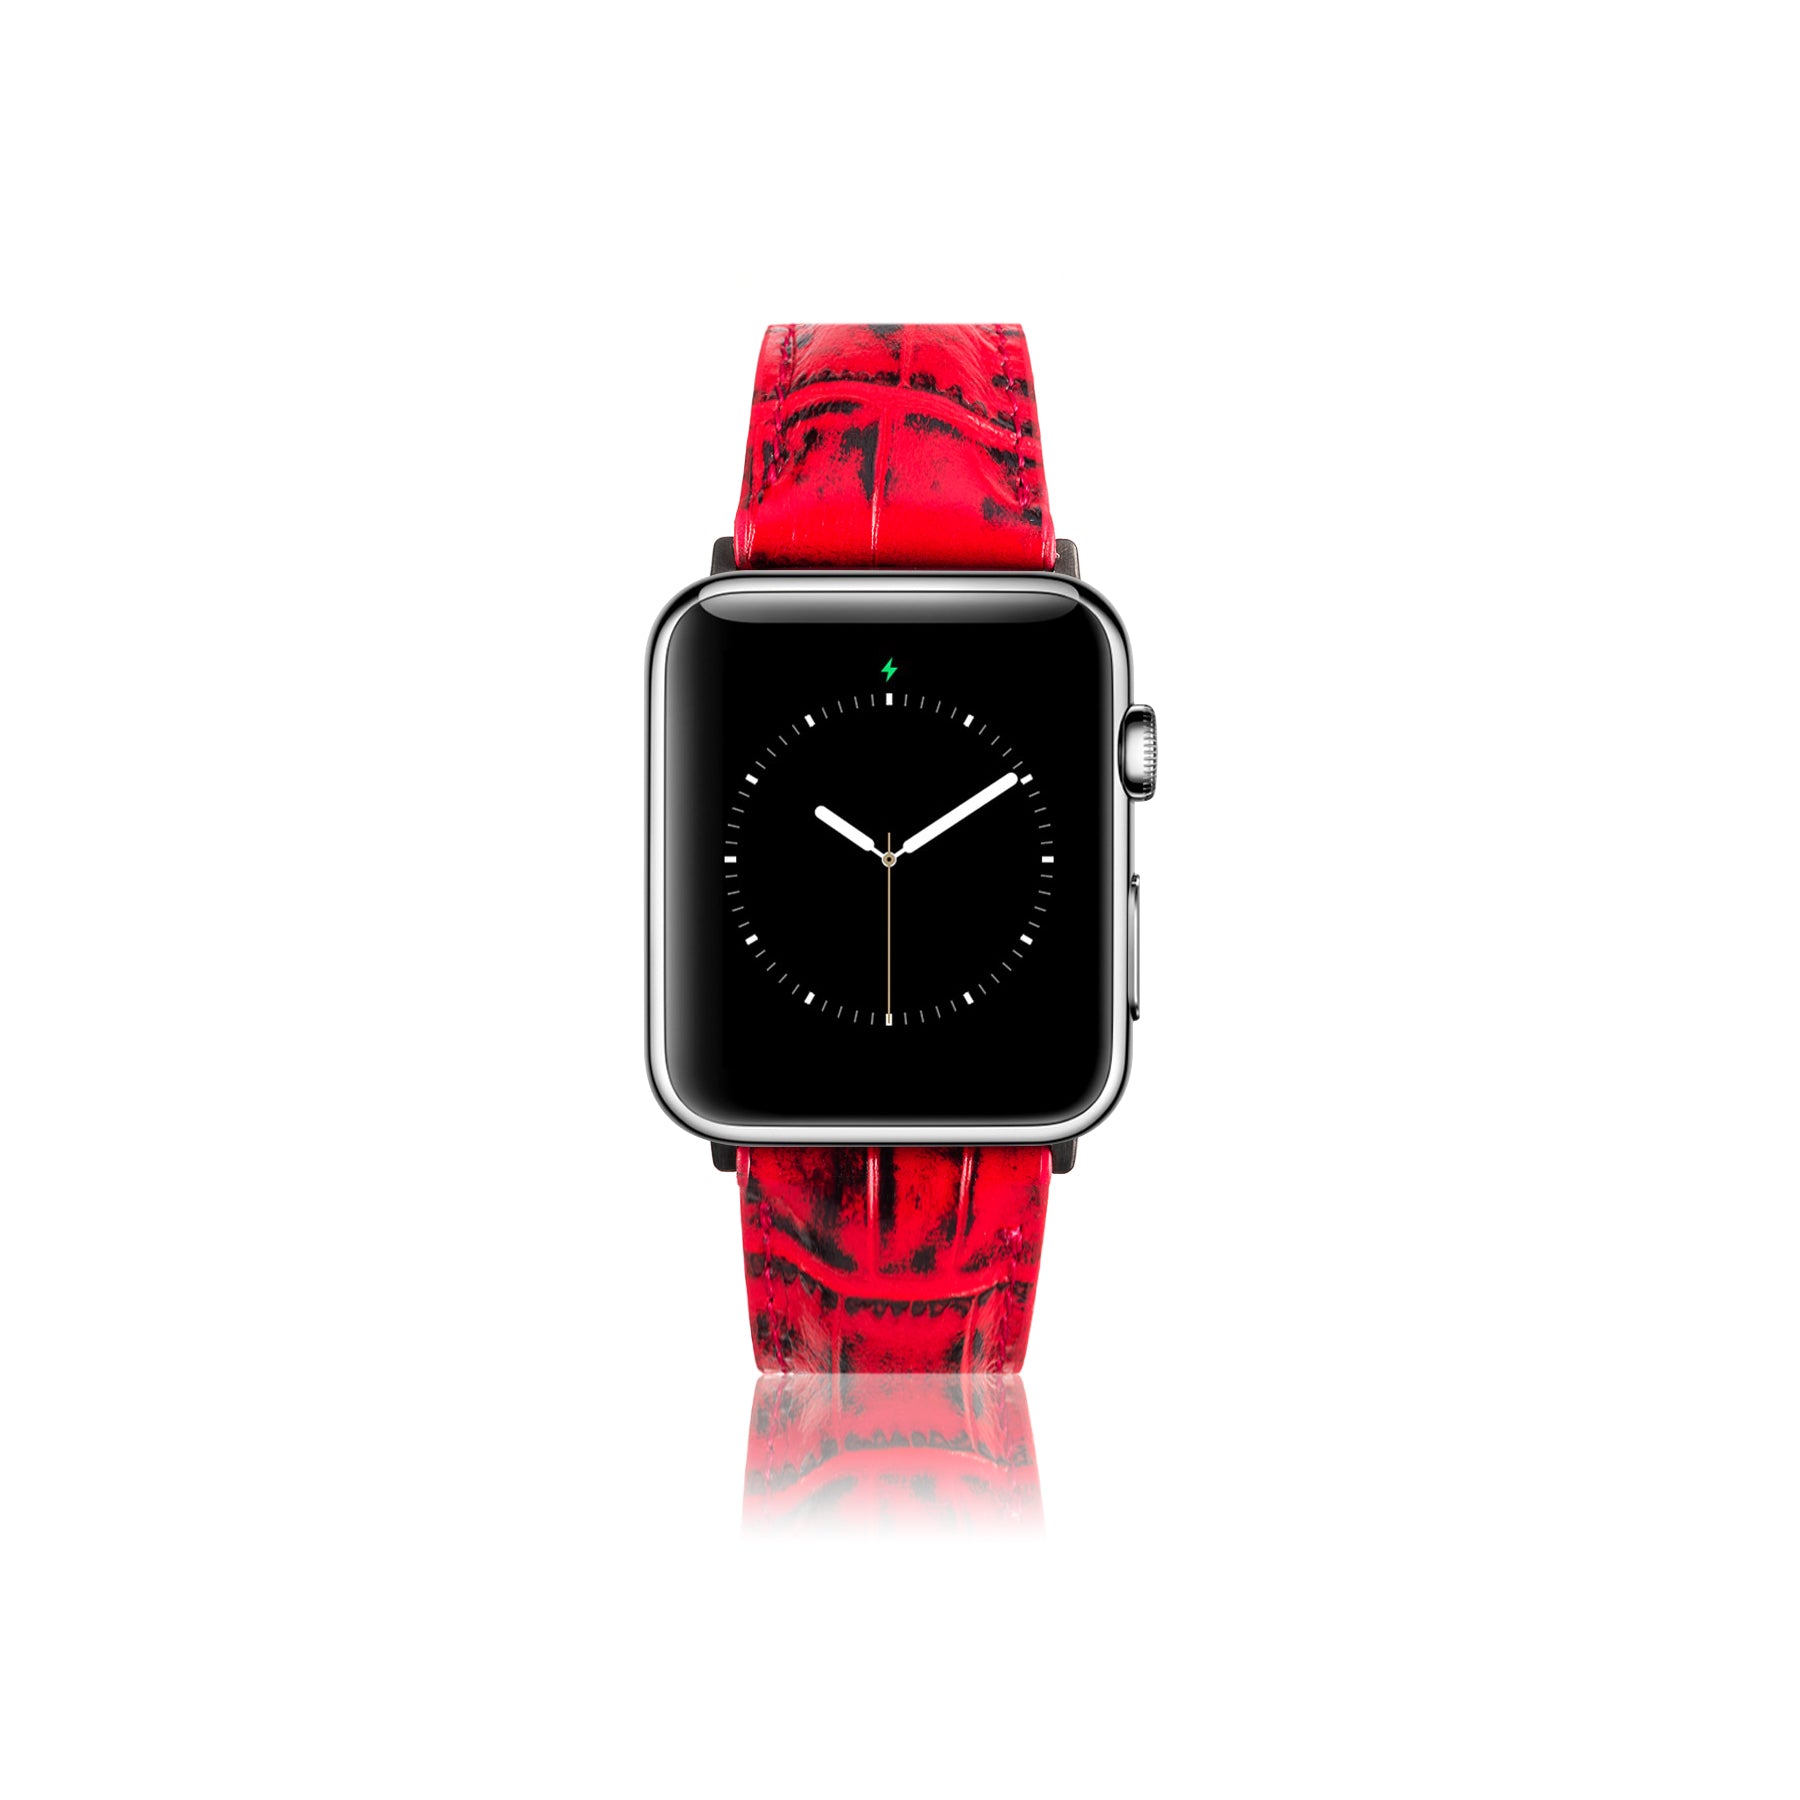 Leren Bandje Apple Watch